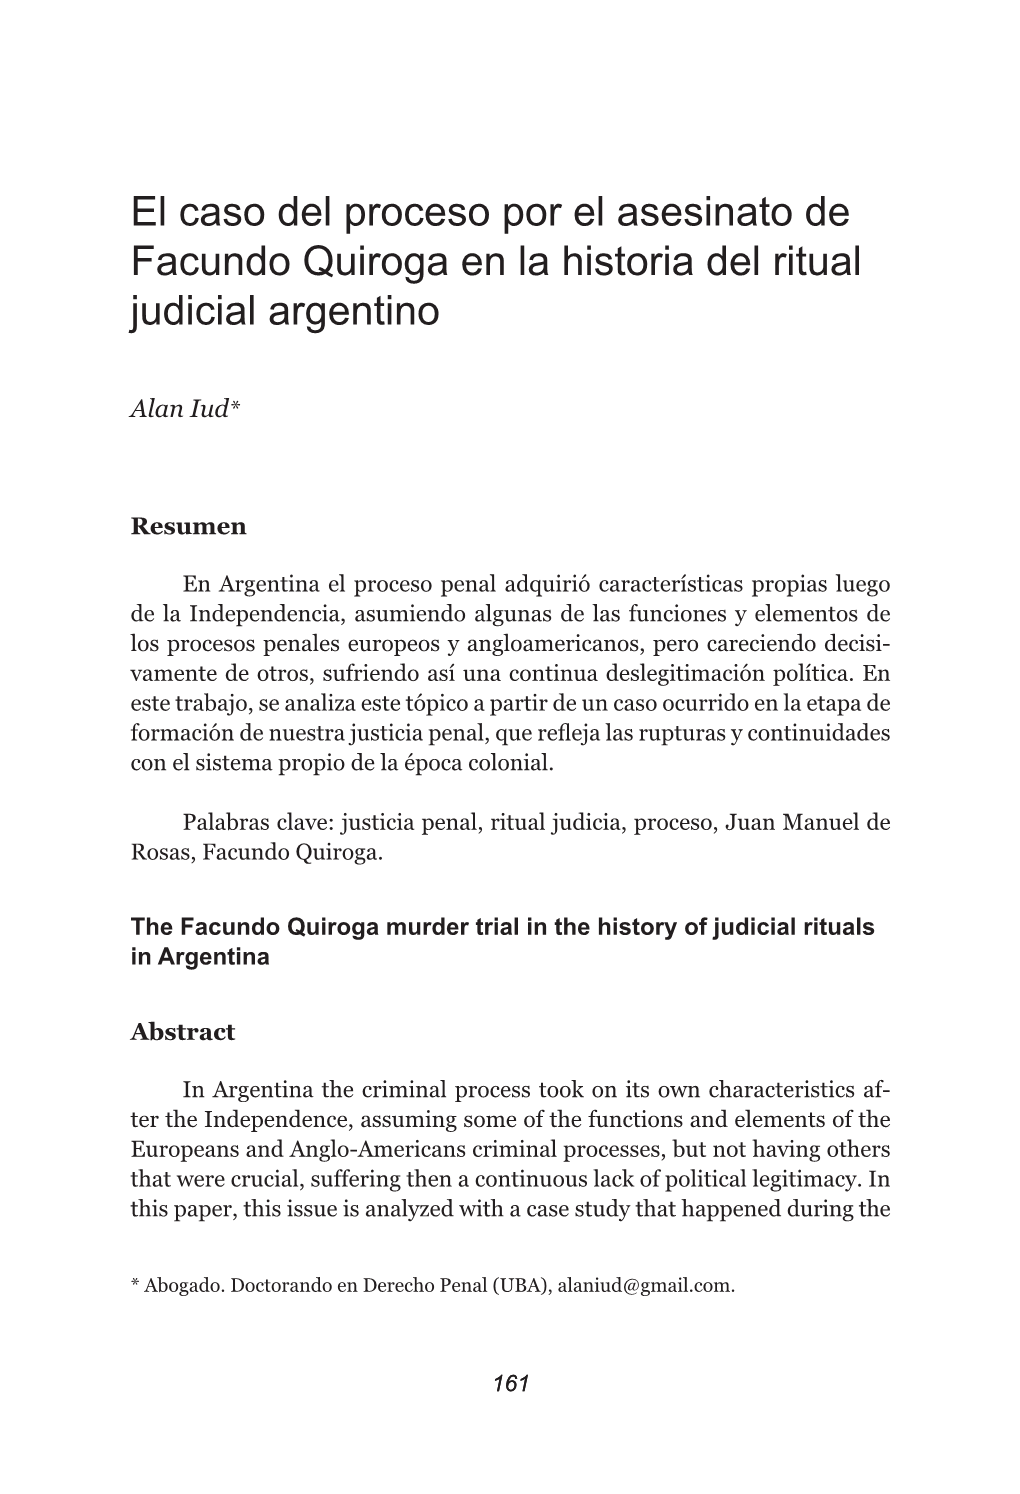 El Caso Del Proceso Por El Asesinato De Facundo Quiroga En La Historia Del Ritual Judicial Argentino